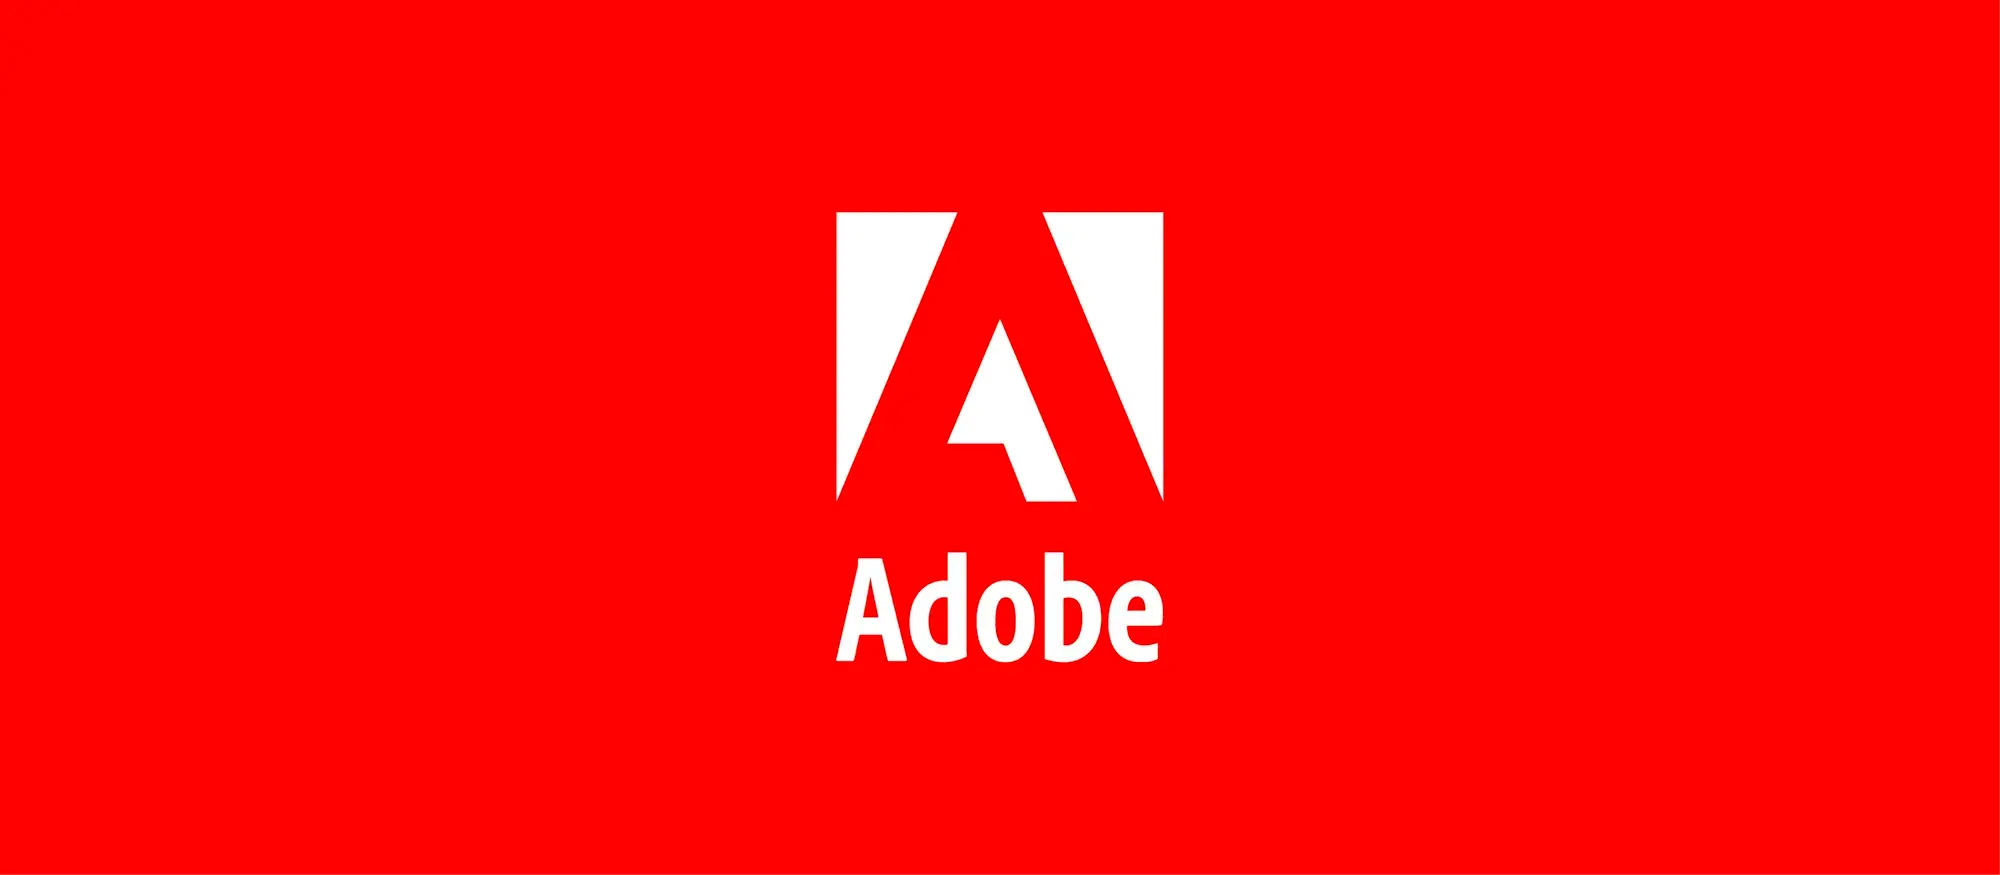 Adobe bruker kunstig intelligens til å skille lydspor